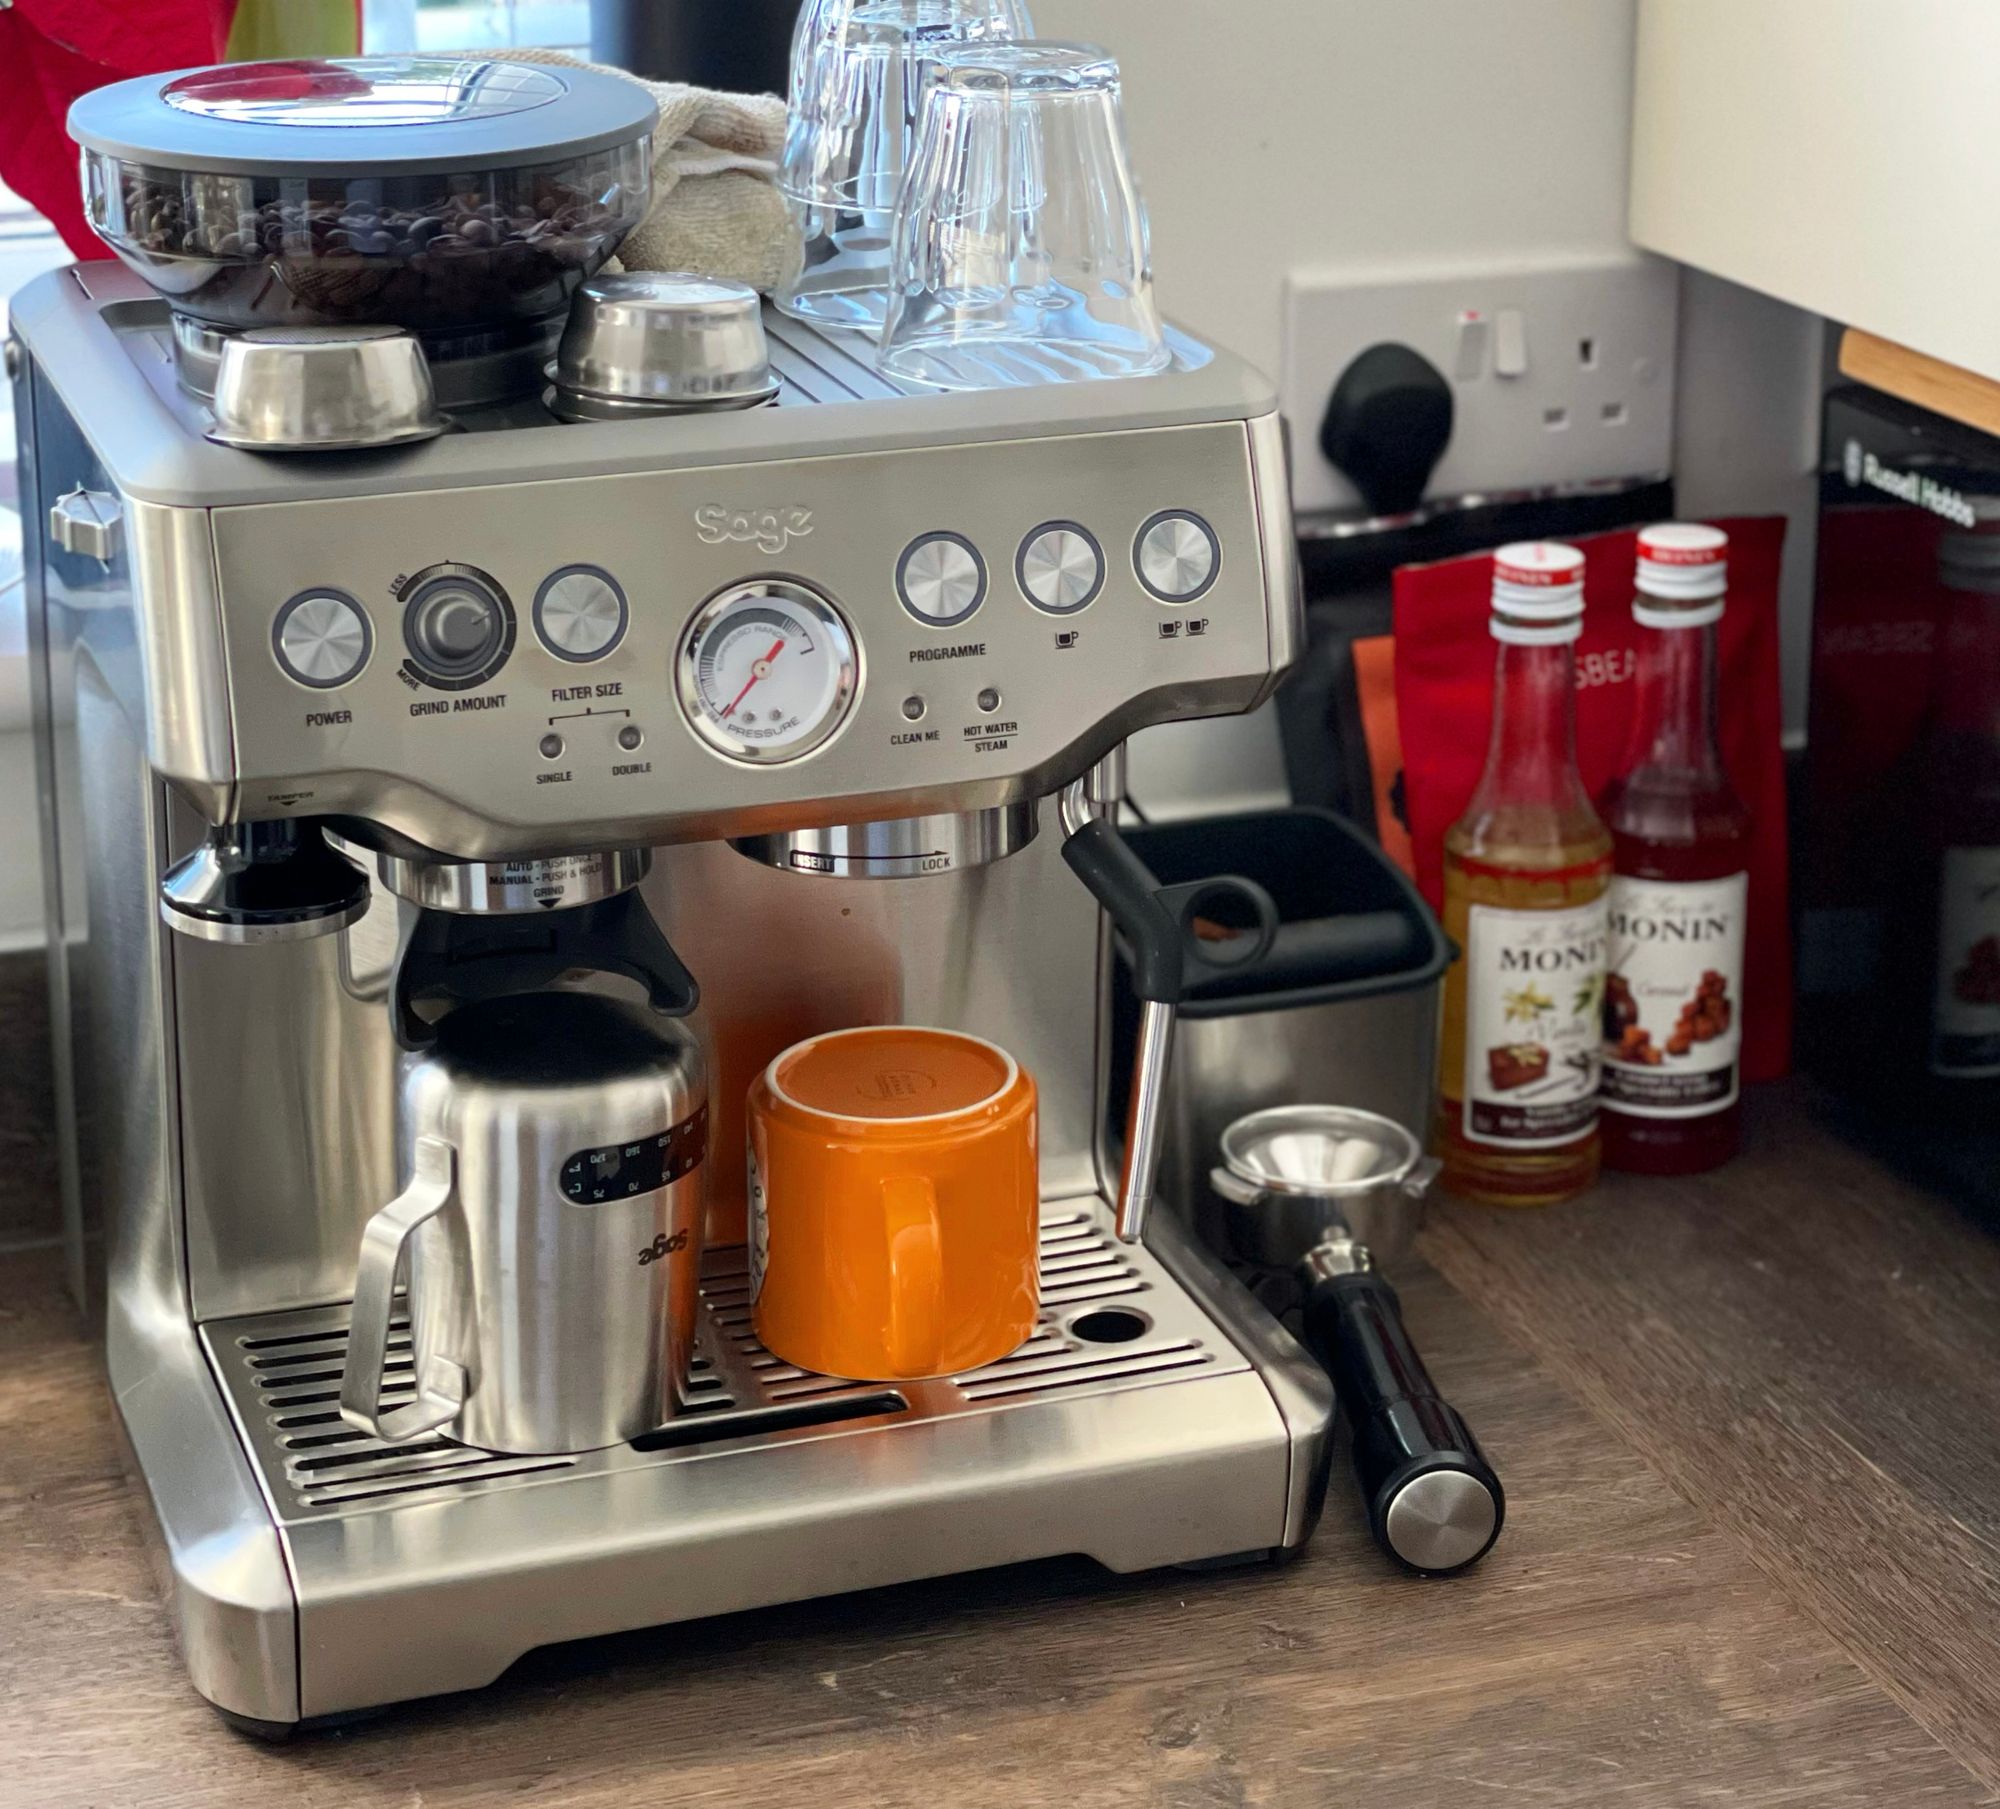 A Sage Barista Express espresso machine on a brown wooden kitchen counter